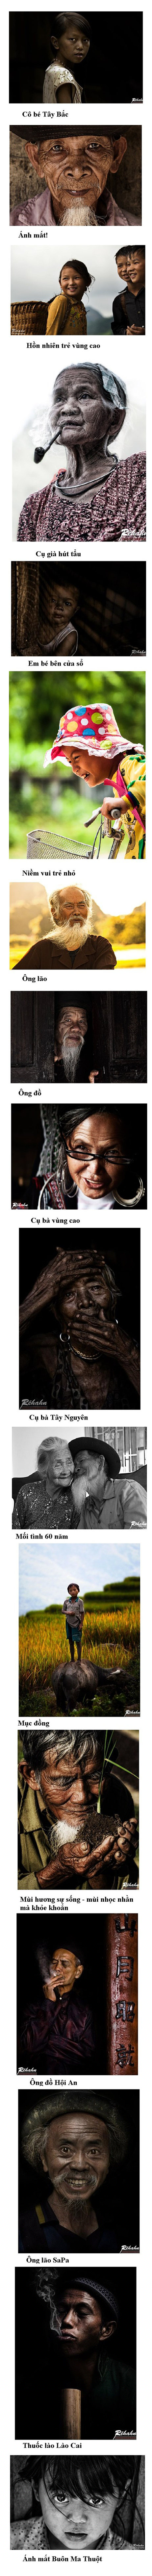 Vẻ đẹp của Việt Nam qua ống kính nhiếp ảnh gia người Pháp